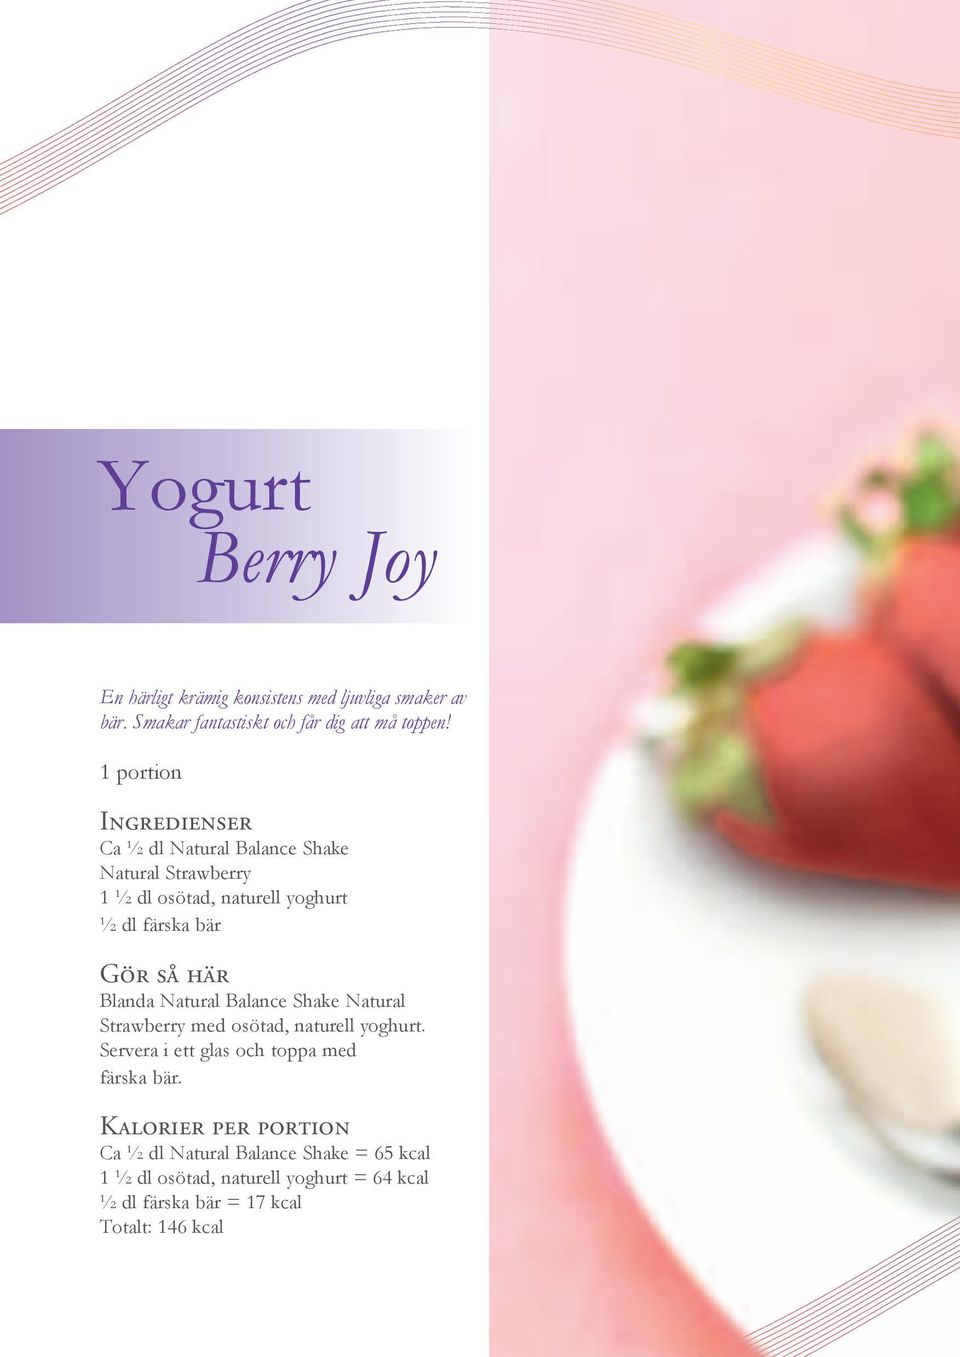 Natural Strawberry 1 ½ dl osötad, naturell yoghurt ½ dl färska bär Blanda Natural Balance Shake